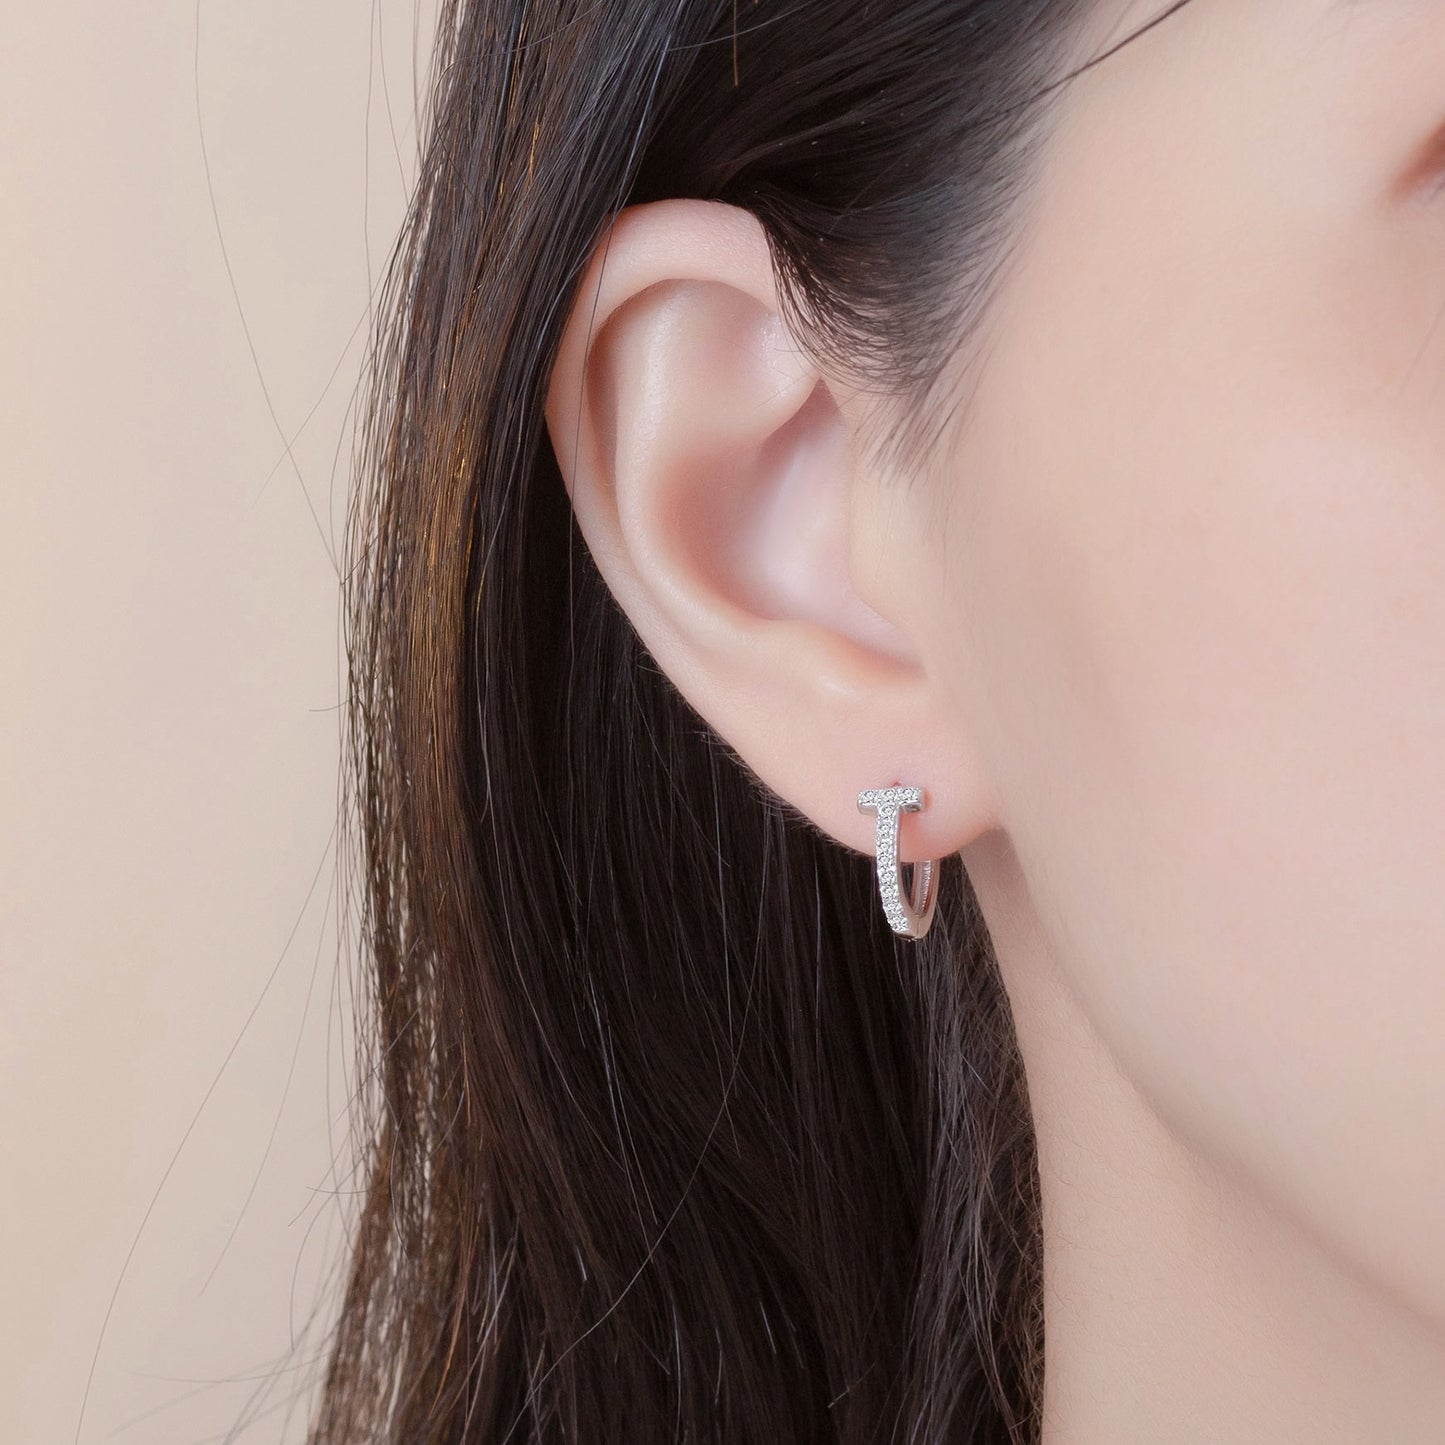 Laura Marla S925 Silver T-shaped Earrings